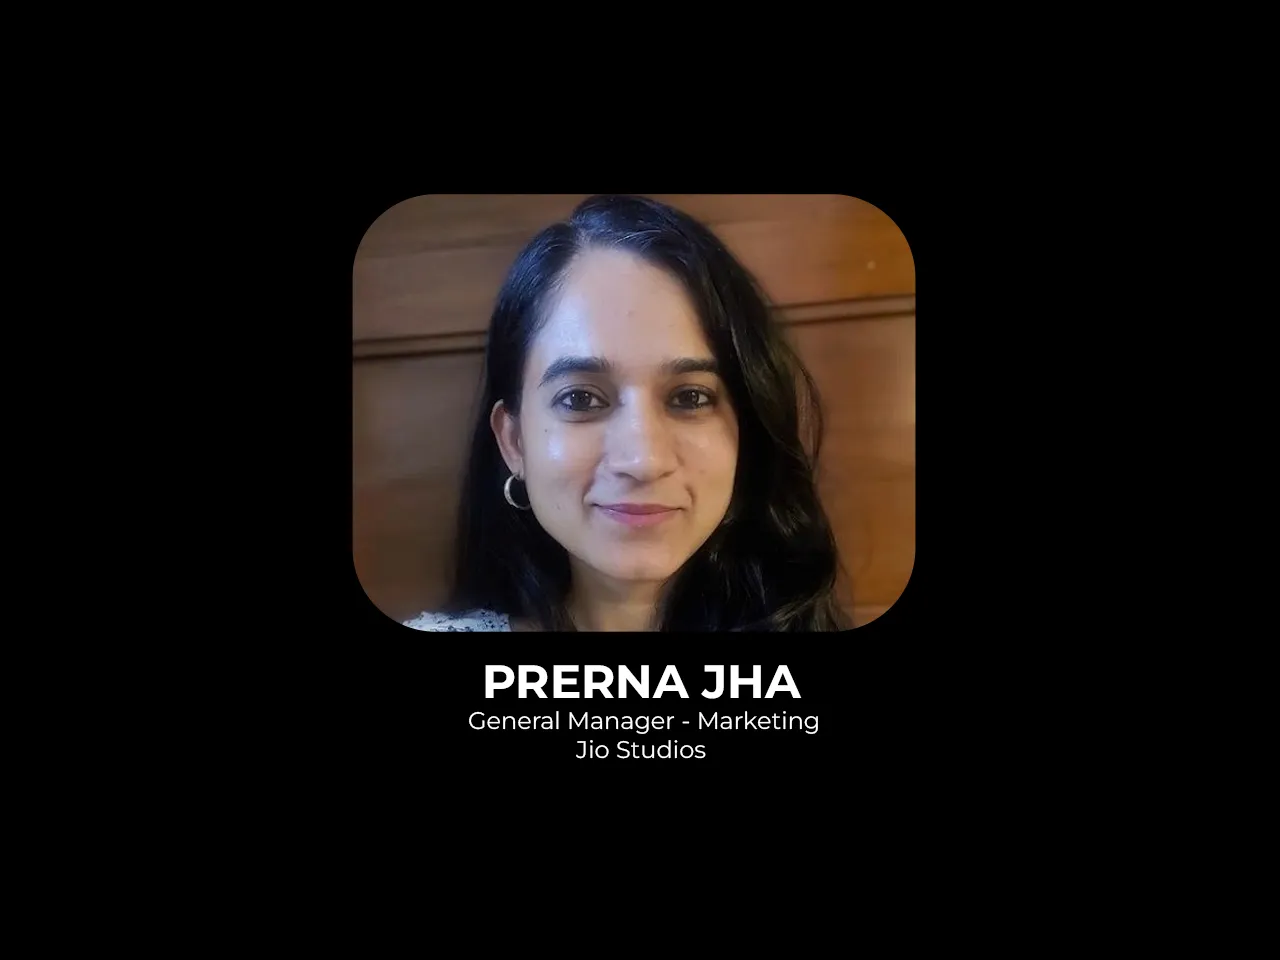 Prerna Jha joins Jio Studios as General Manager, Marketing